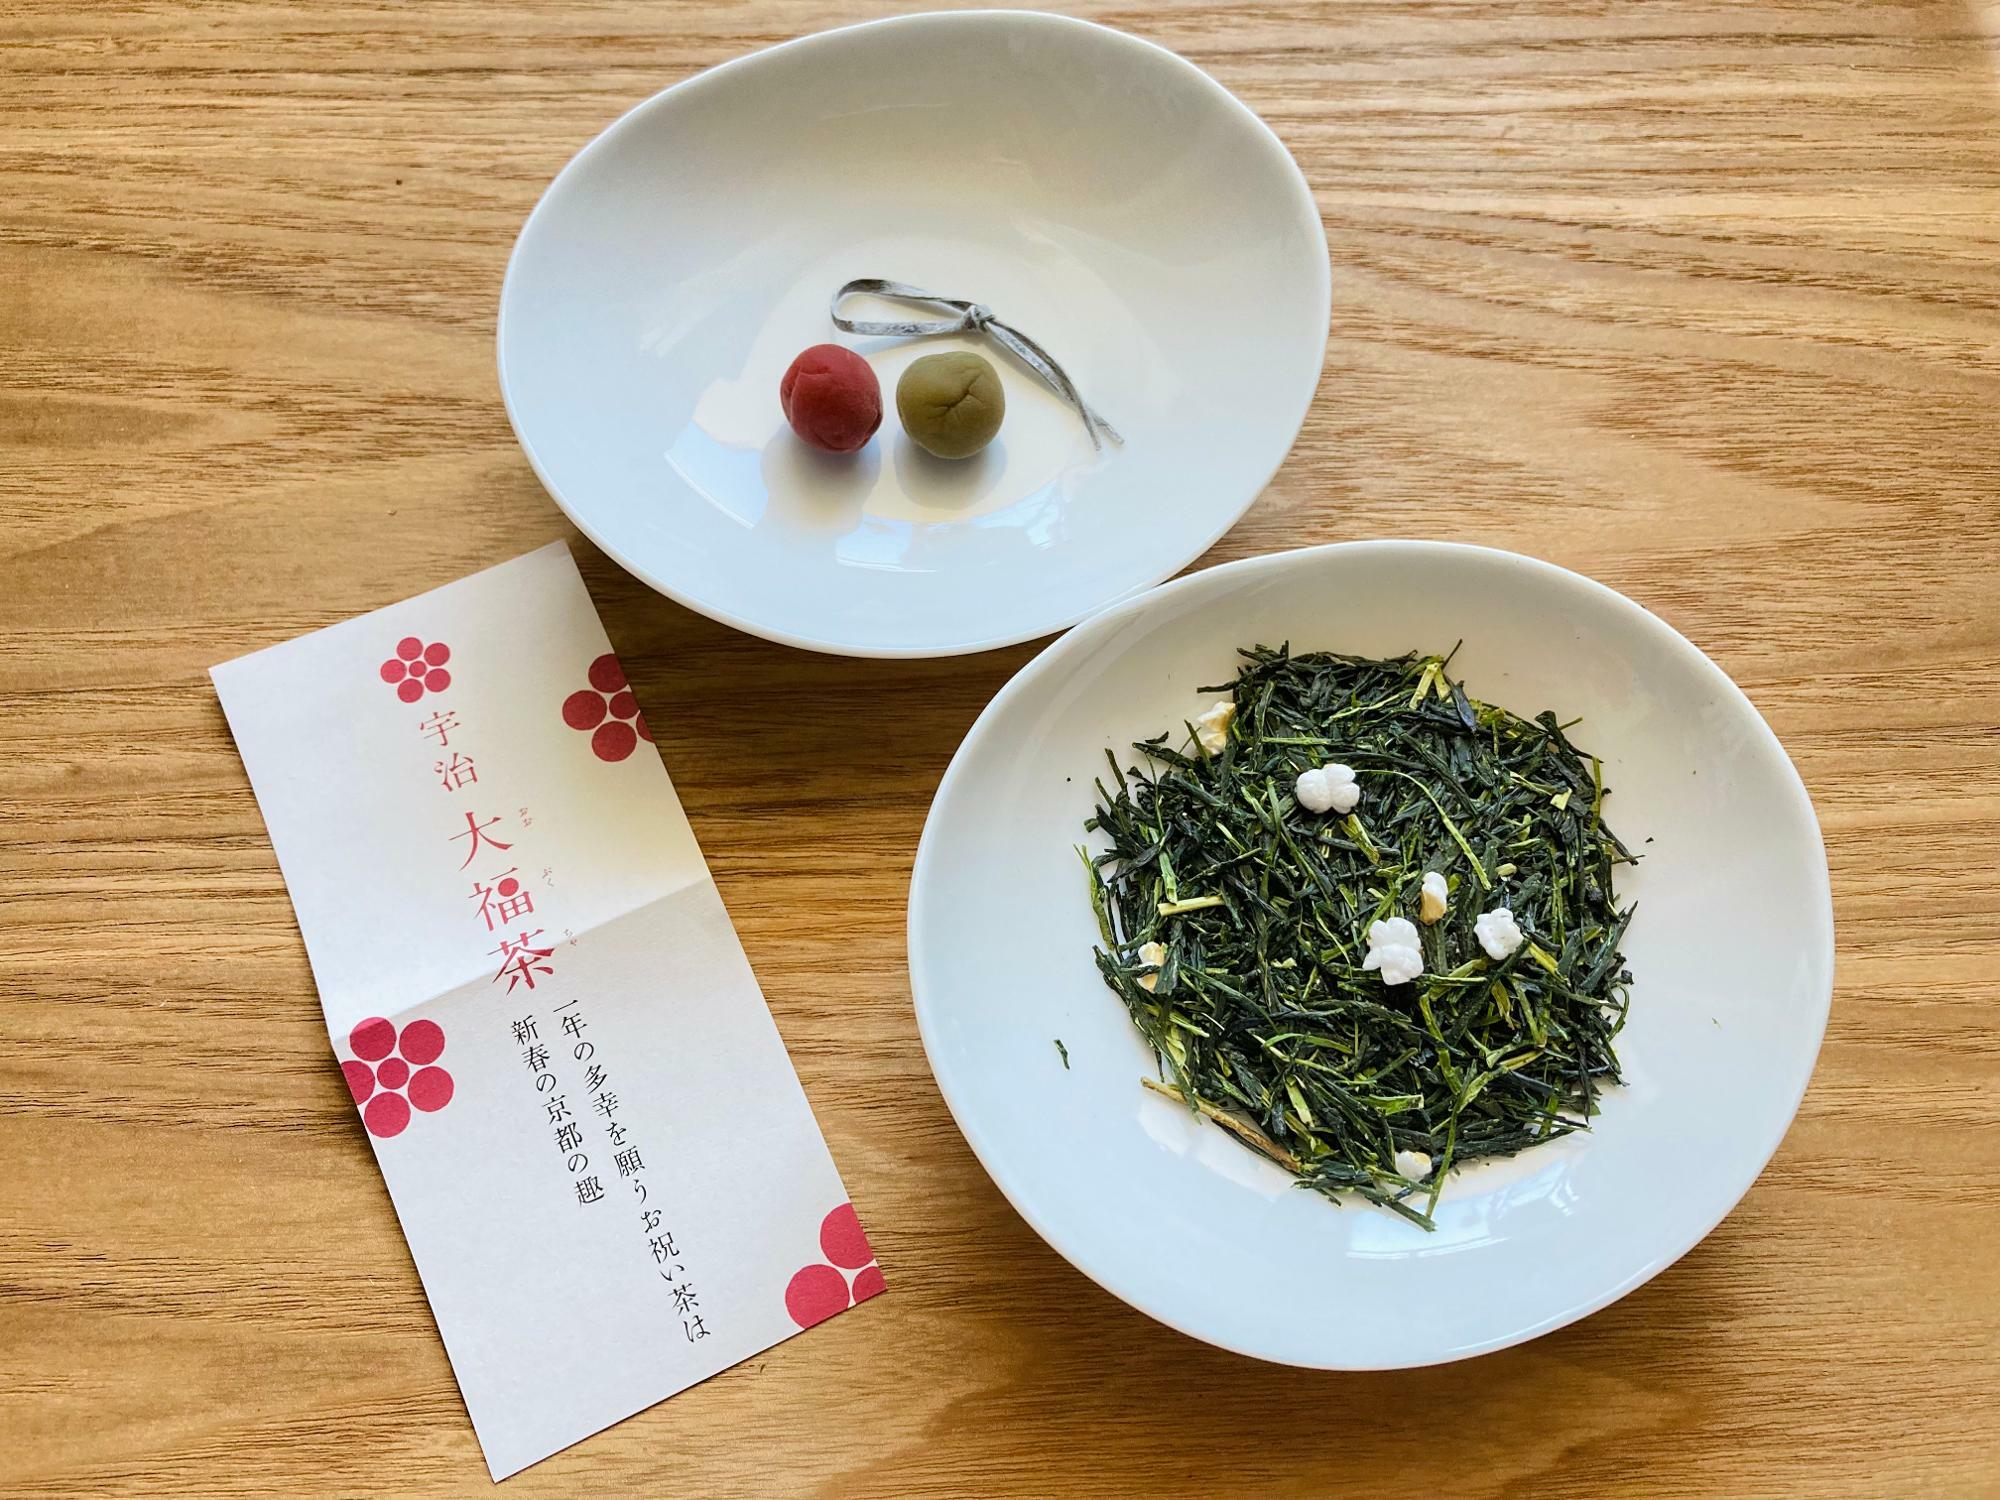 こちらは祇園辻利のお正月用の「大福茶」。お祝いのお茶ということで宇治の上質な煎茶がベースになっており、炒り玄米は少な目